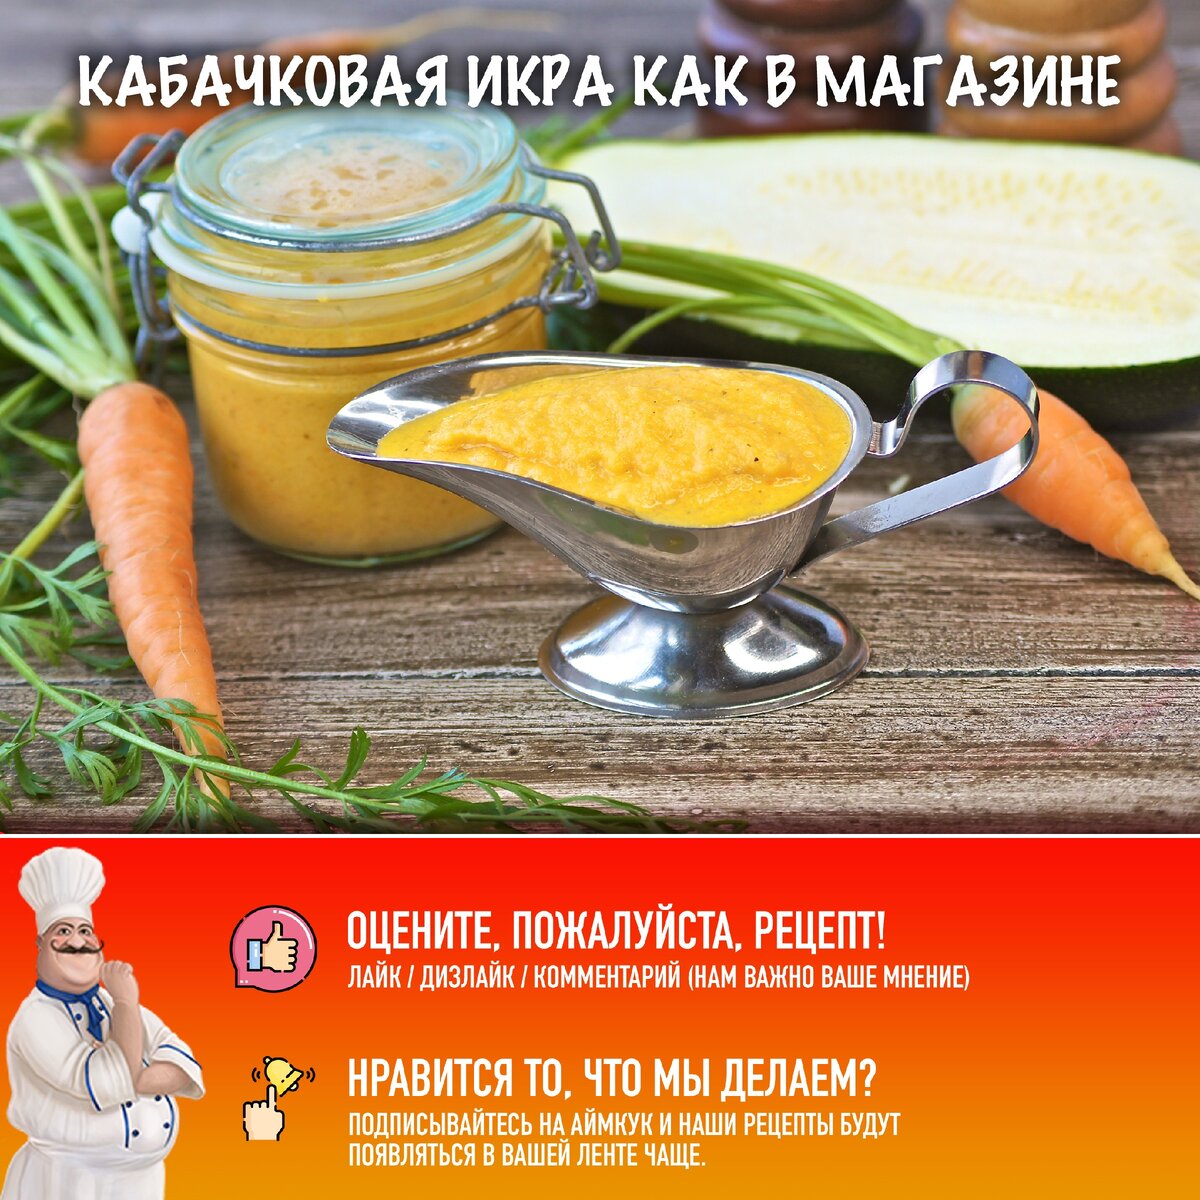 Кабачковая икра как в магазине по ГОСТу рецепт с фото, как приготовить на restyleprof.ru